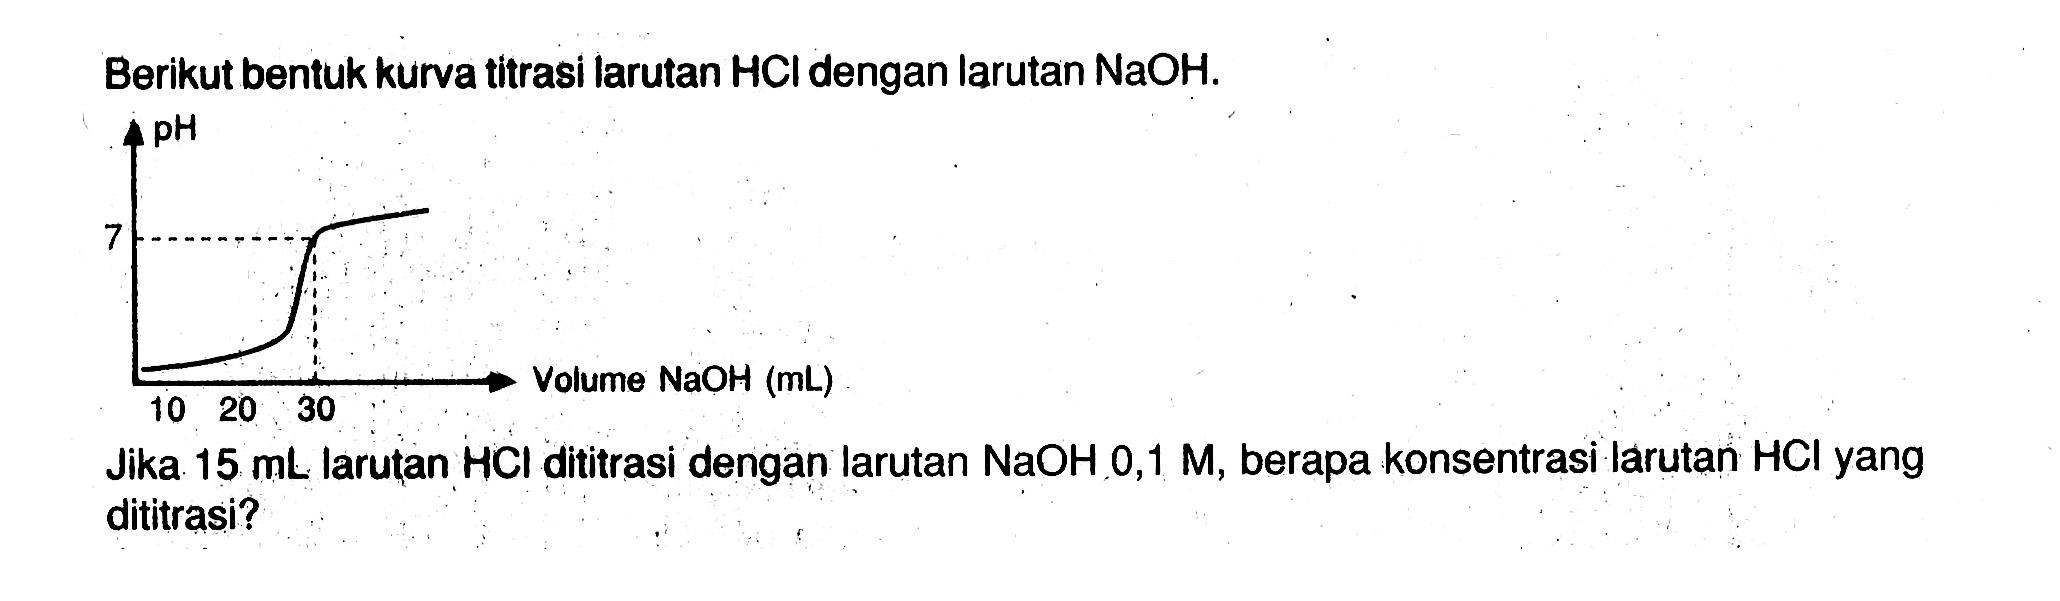 Berikut bentuk kurva titrasi larutan HCl dengan larutan NaOH . Jika 15 mL larutan HCl dititrasi dengan larutan NaOH, 0,1 M, berapa konsentrasi larutan HCl yang dititrasi?